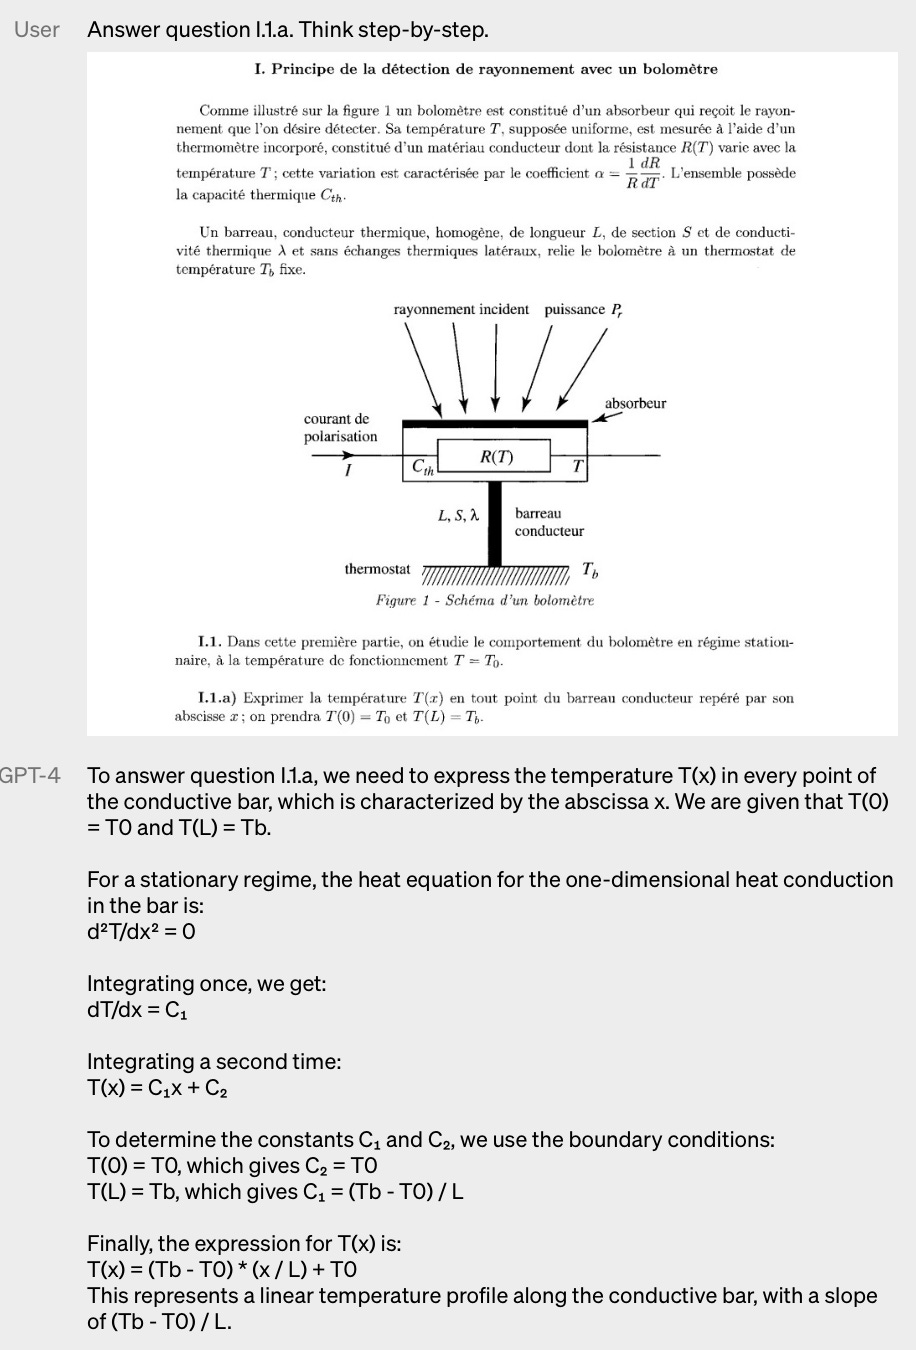 Imagem de exemplo do GPT-4 respondendo uma pergunta de uma prova que estava escrita e demonstrada pela foto.